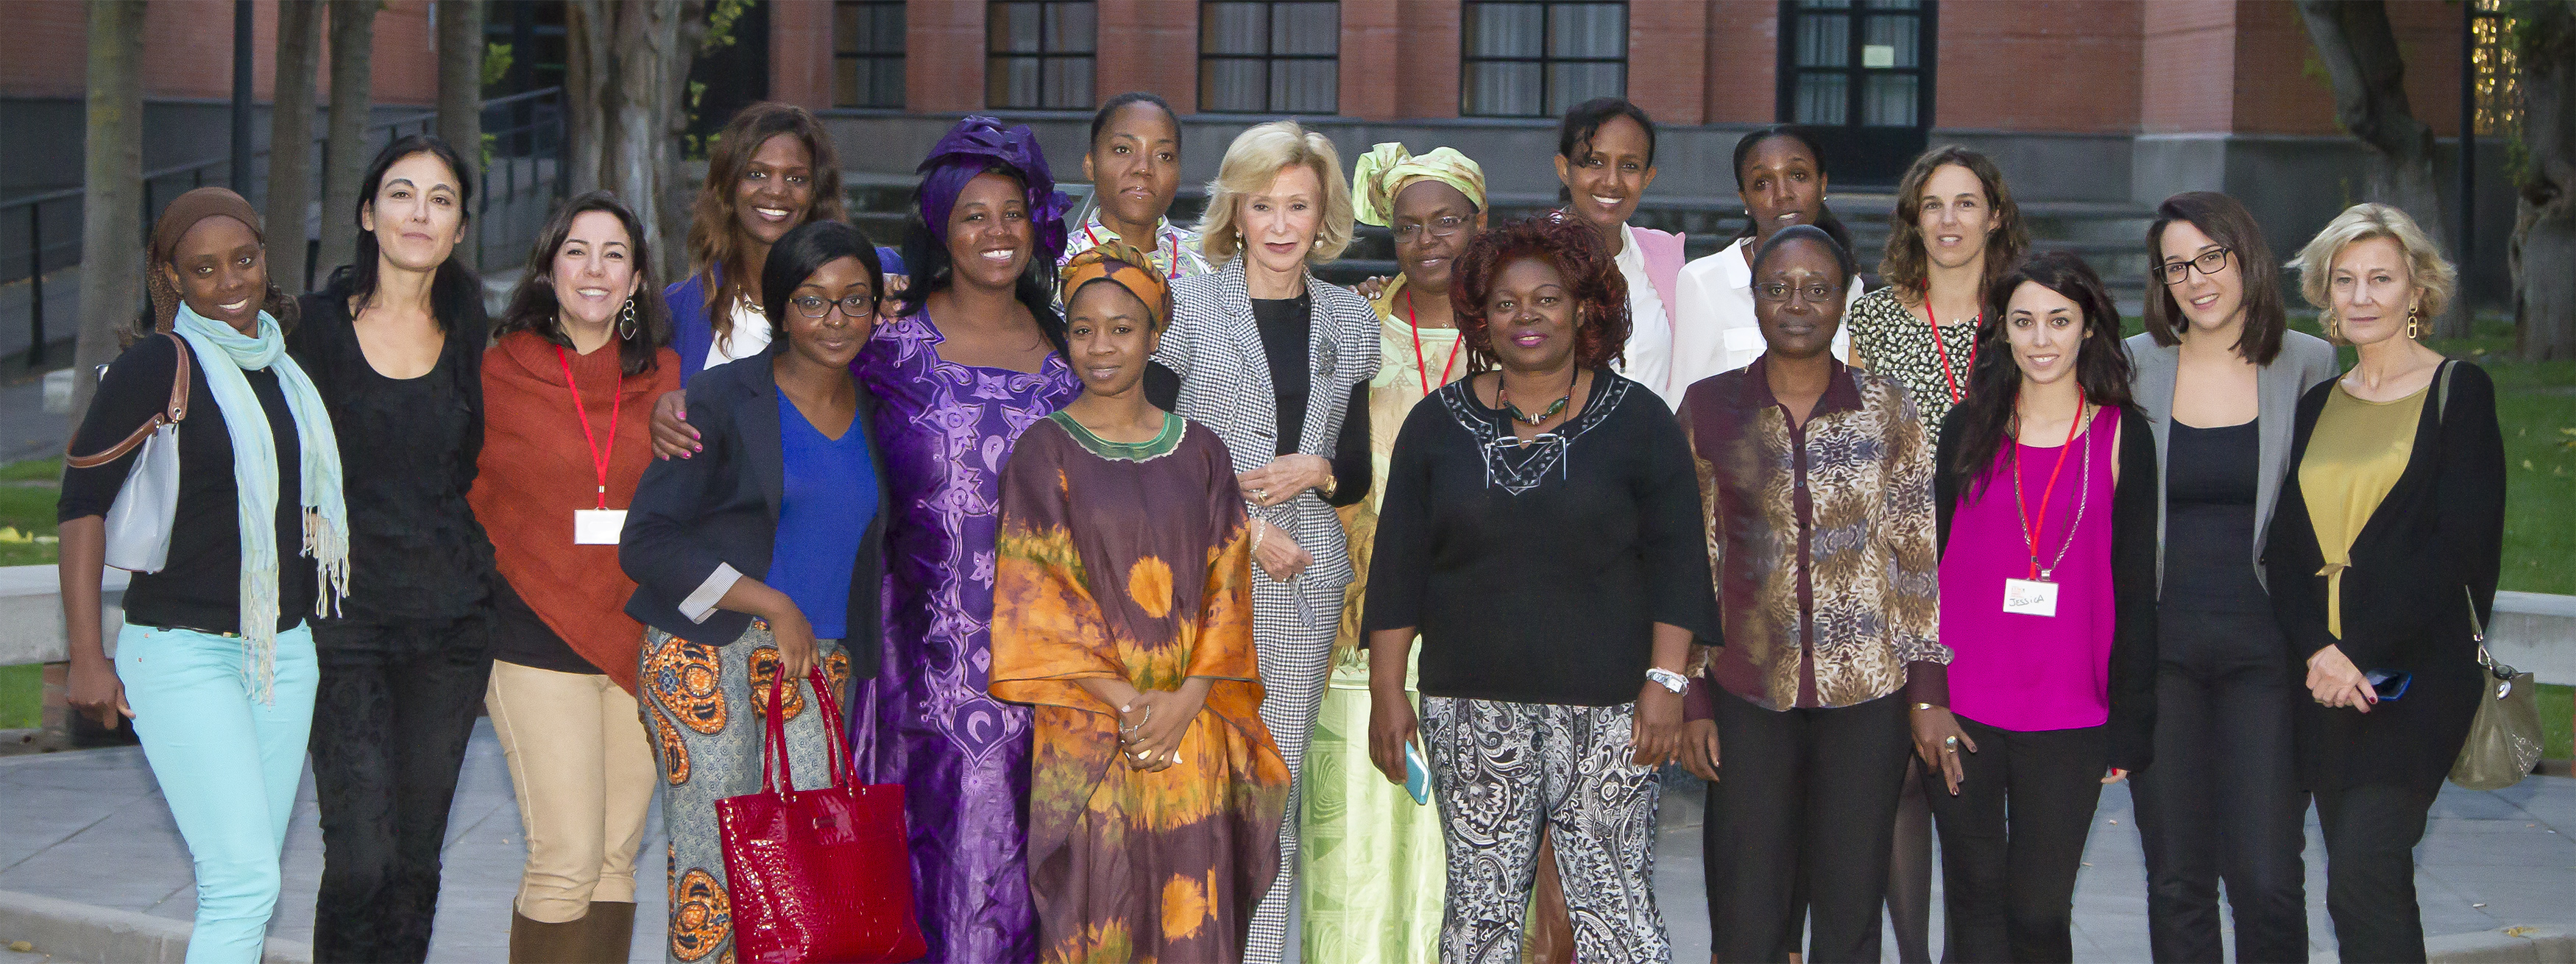 Encuentro Fundación de Mujeres por África Univ. CarlosIII Madrid 2013